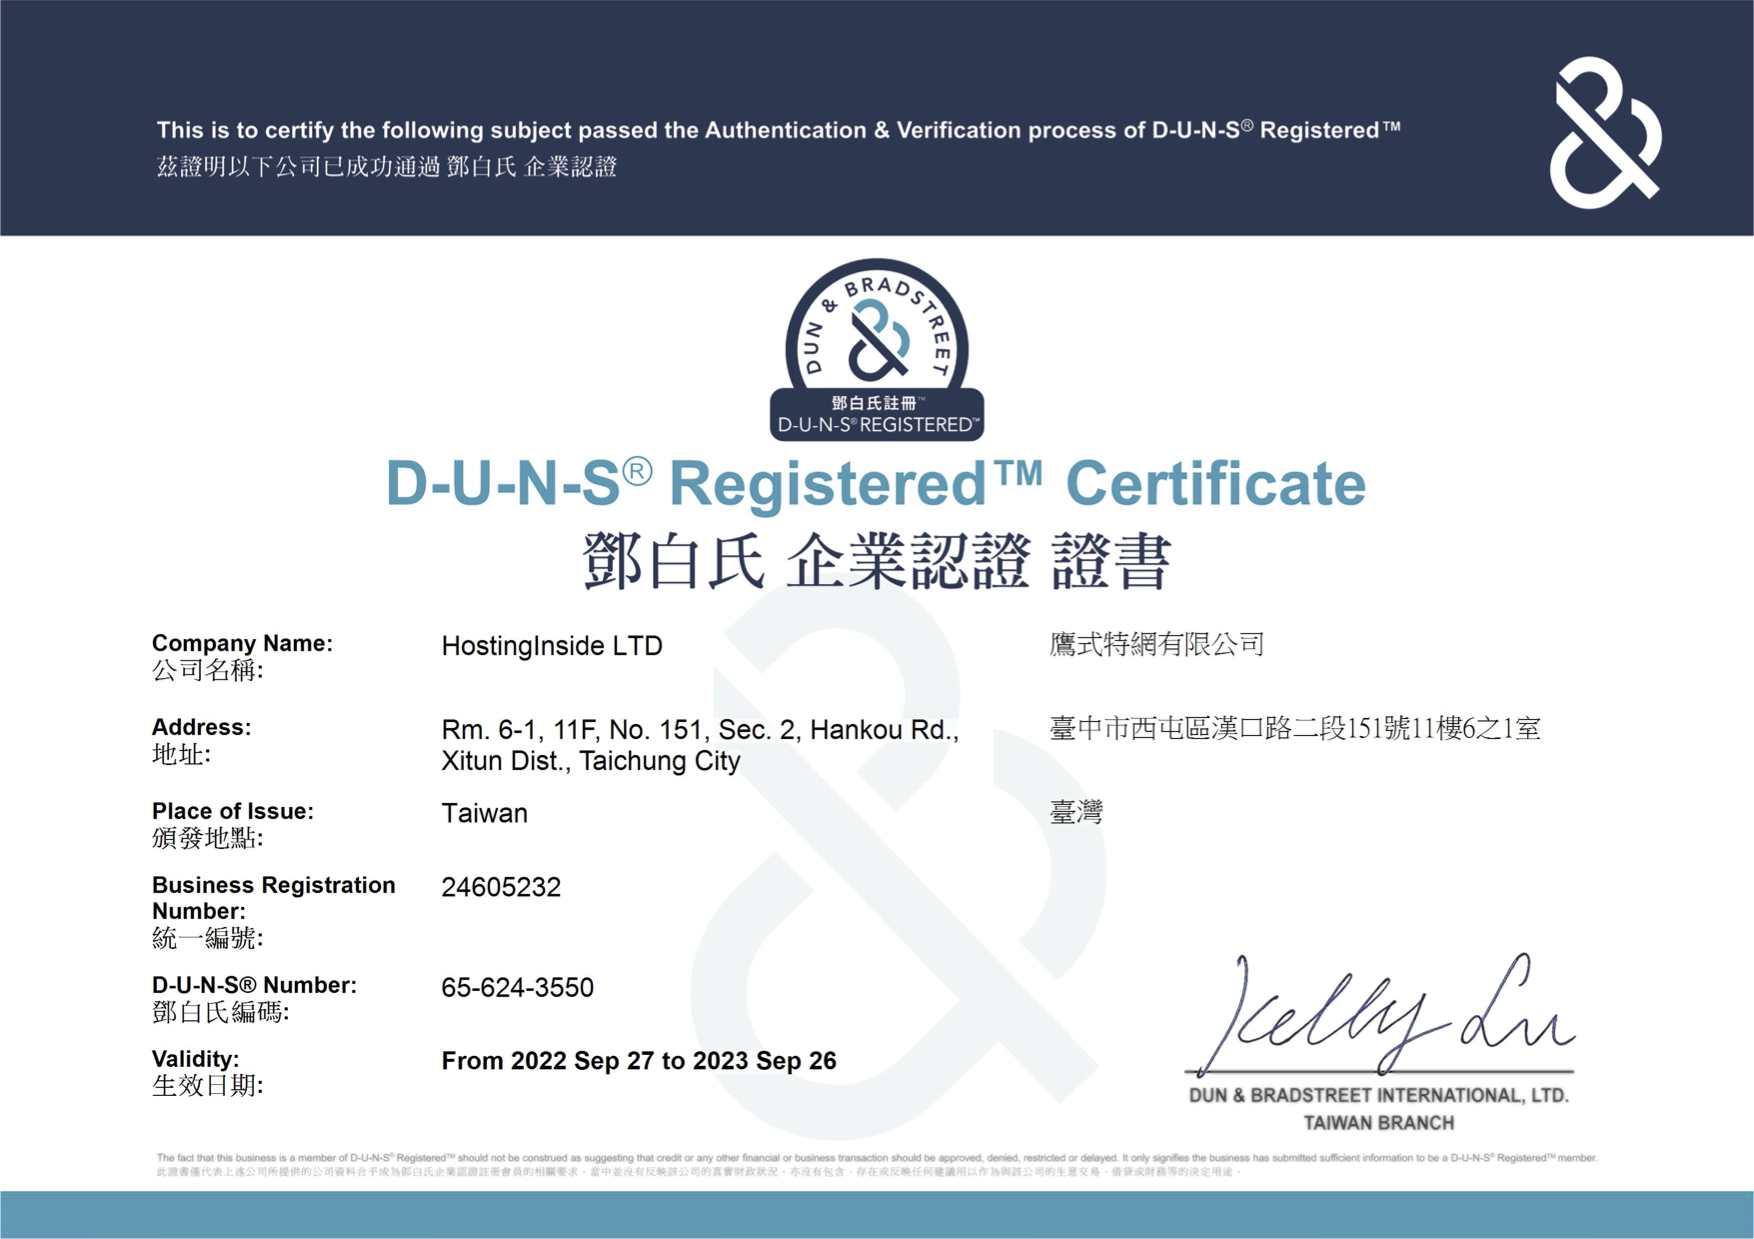 D&B DUNS Certificate